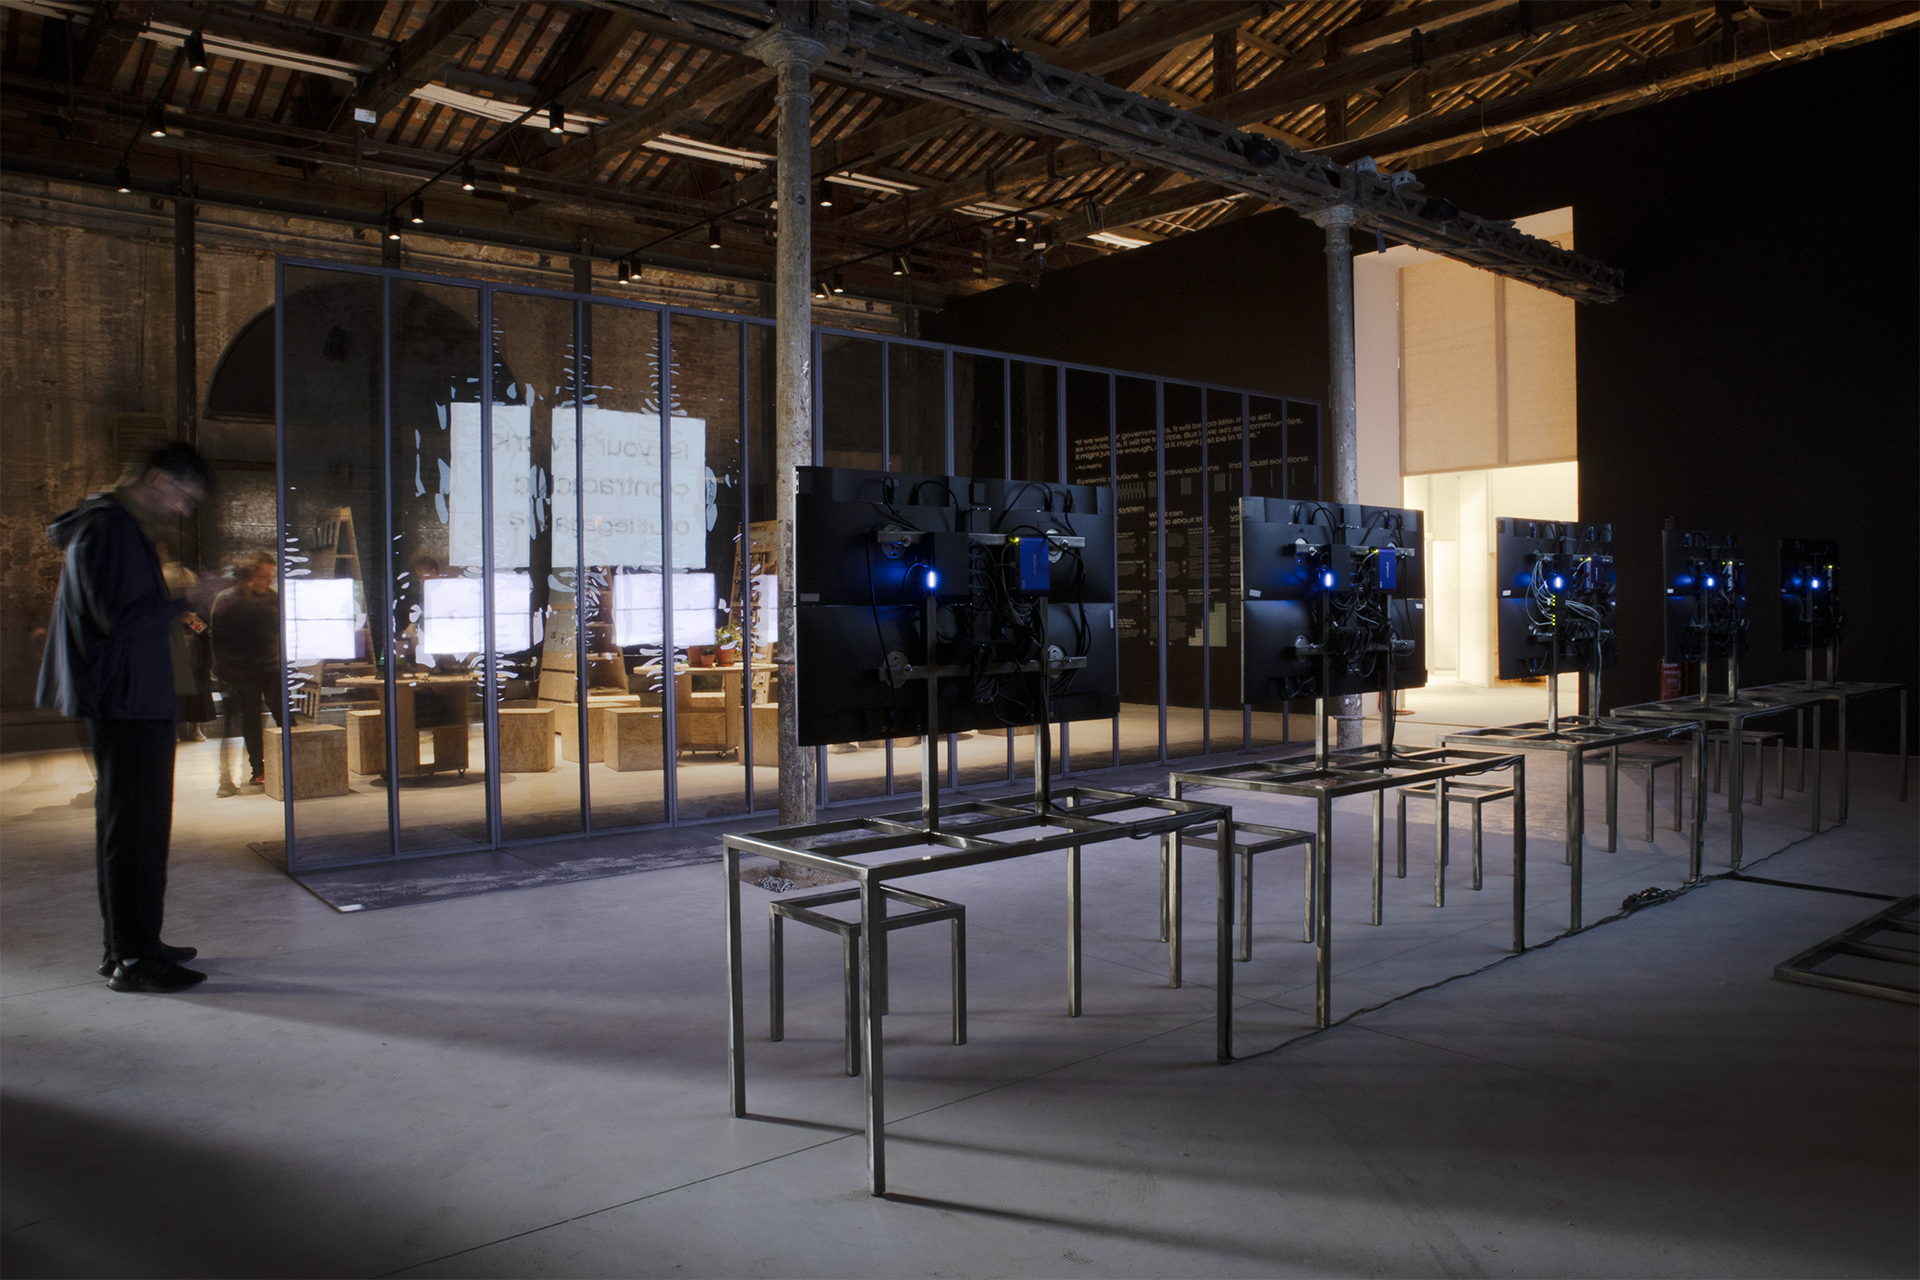 Czech pavilion exhibition at Architecture Biennale in Venice